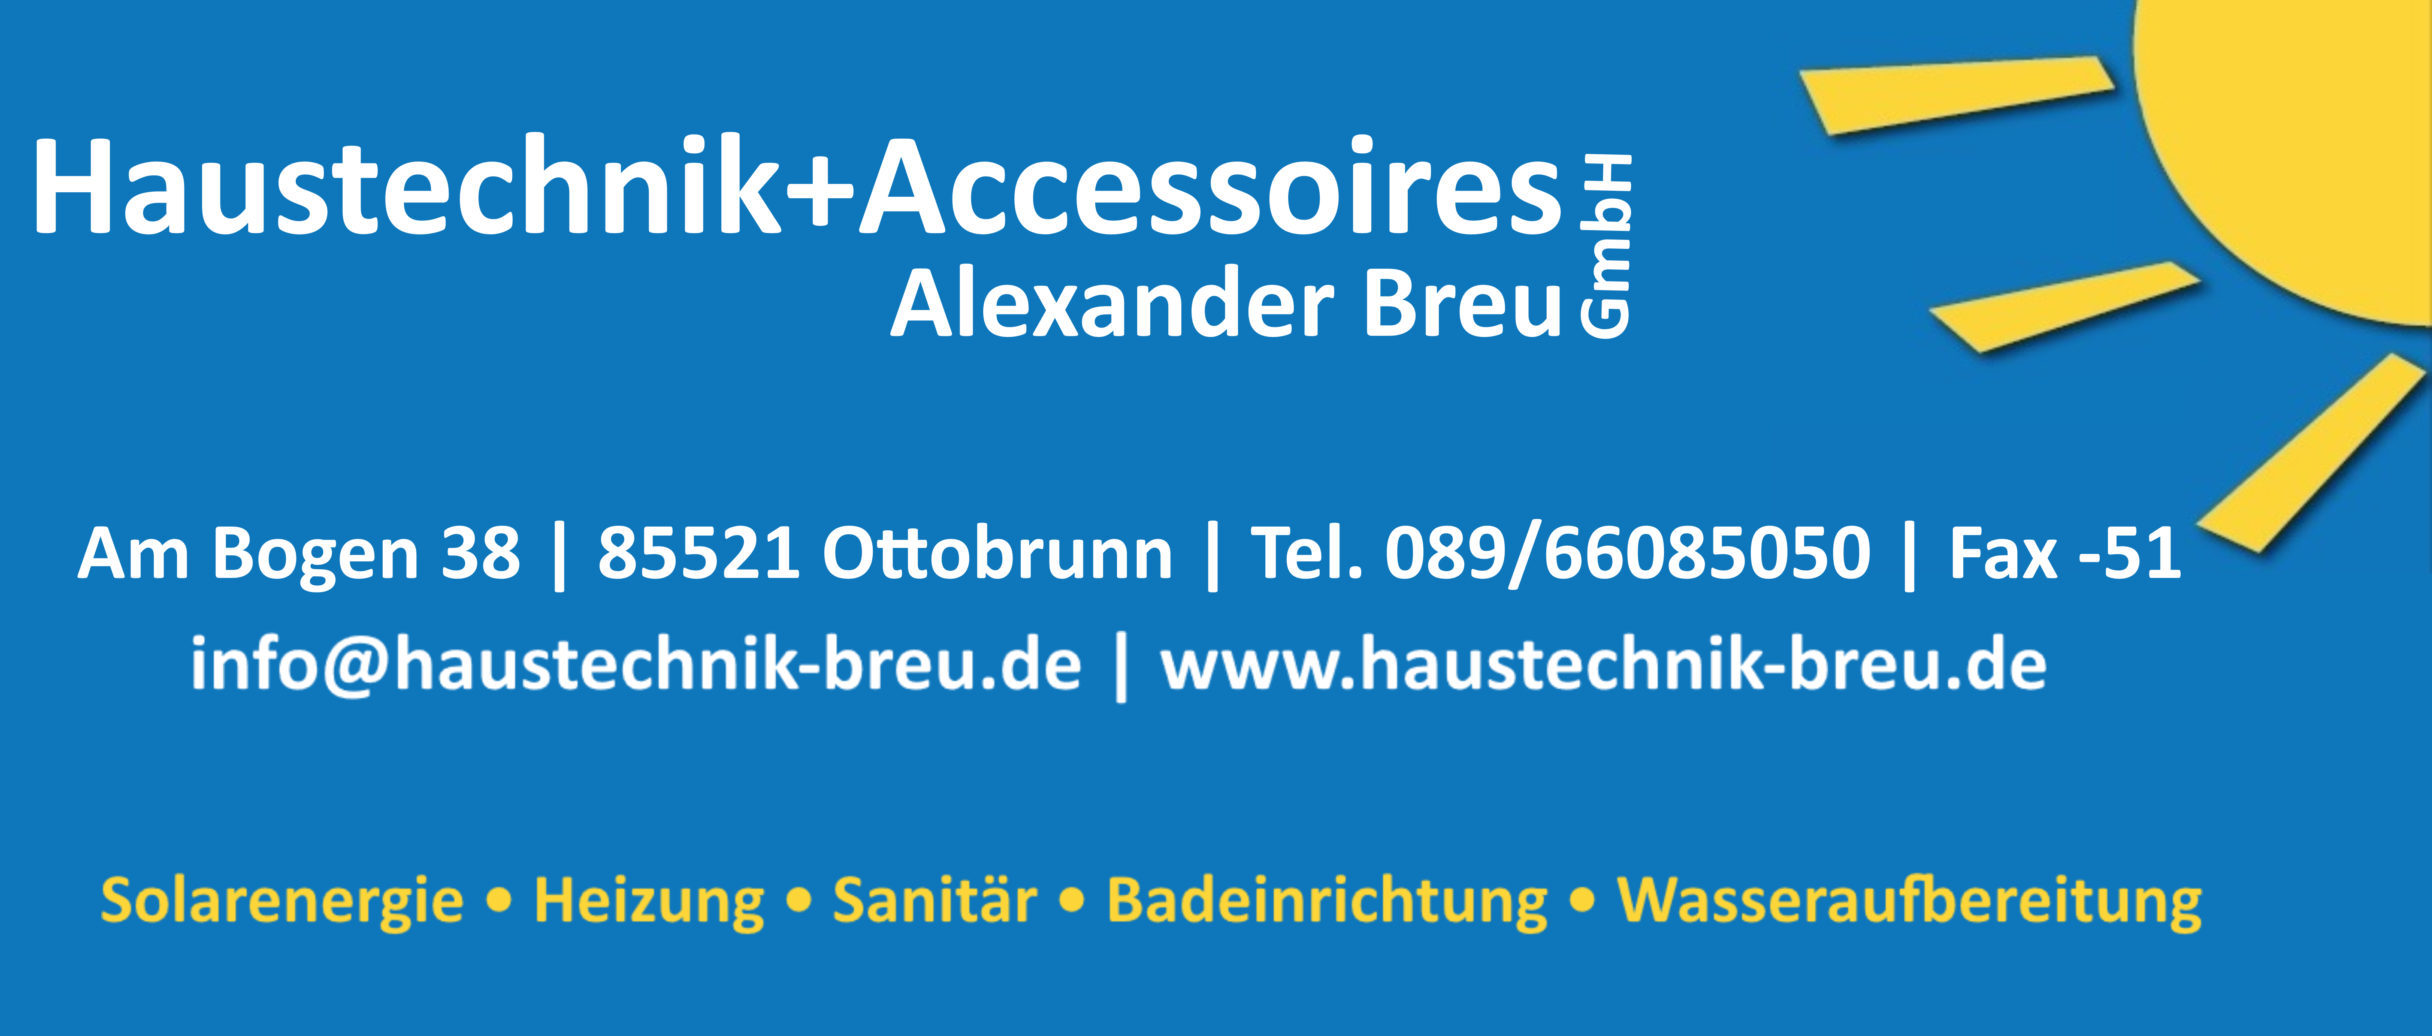 Trinkwasserfilter Haustechnik und Accessoires GmbH Ottobrunn